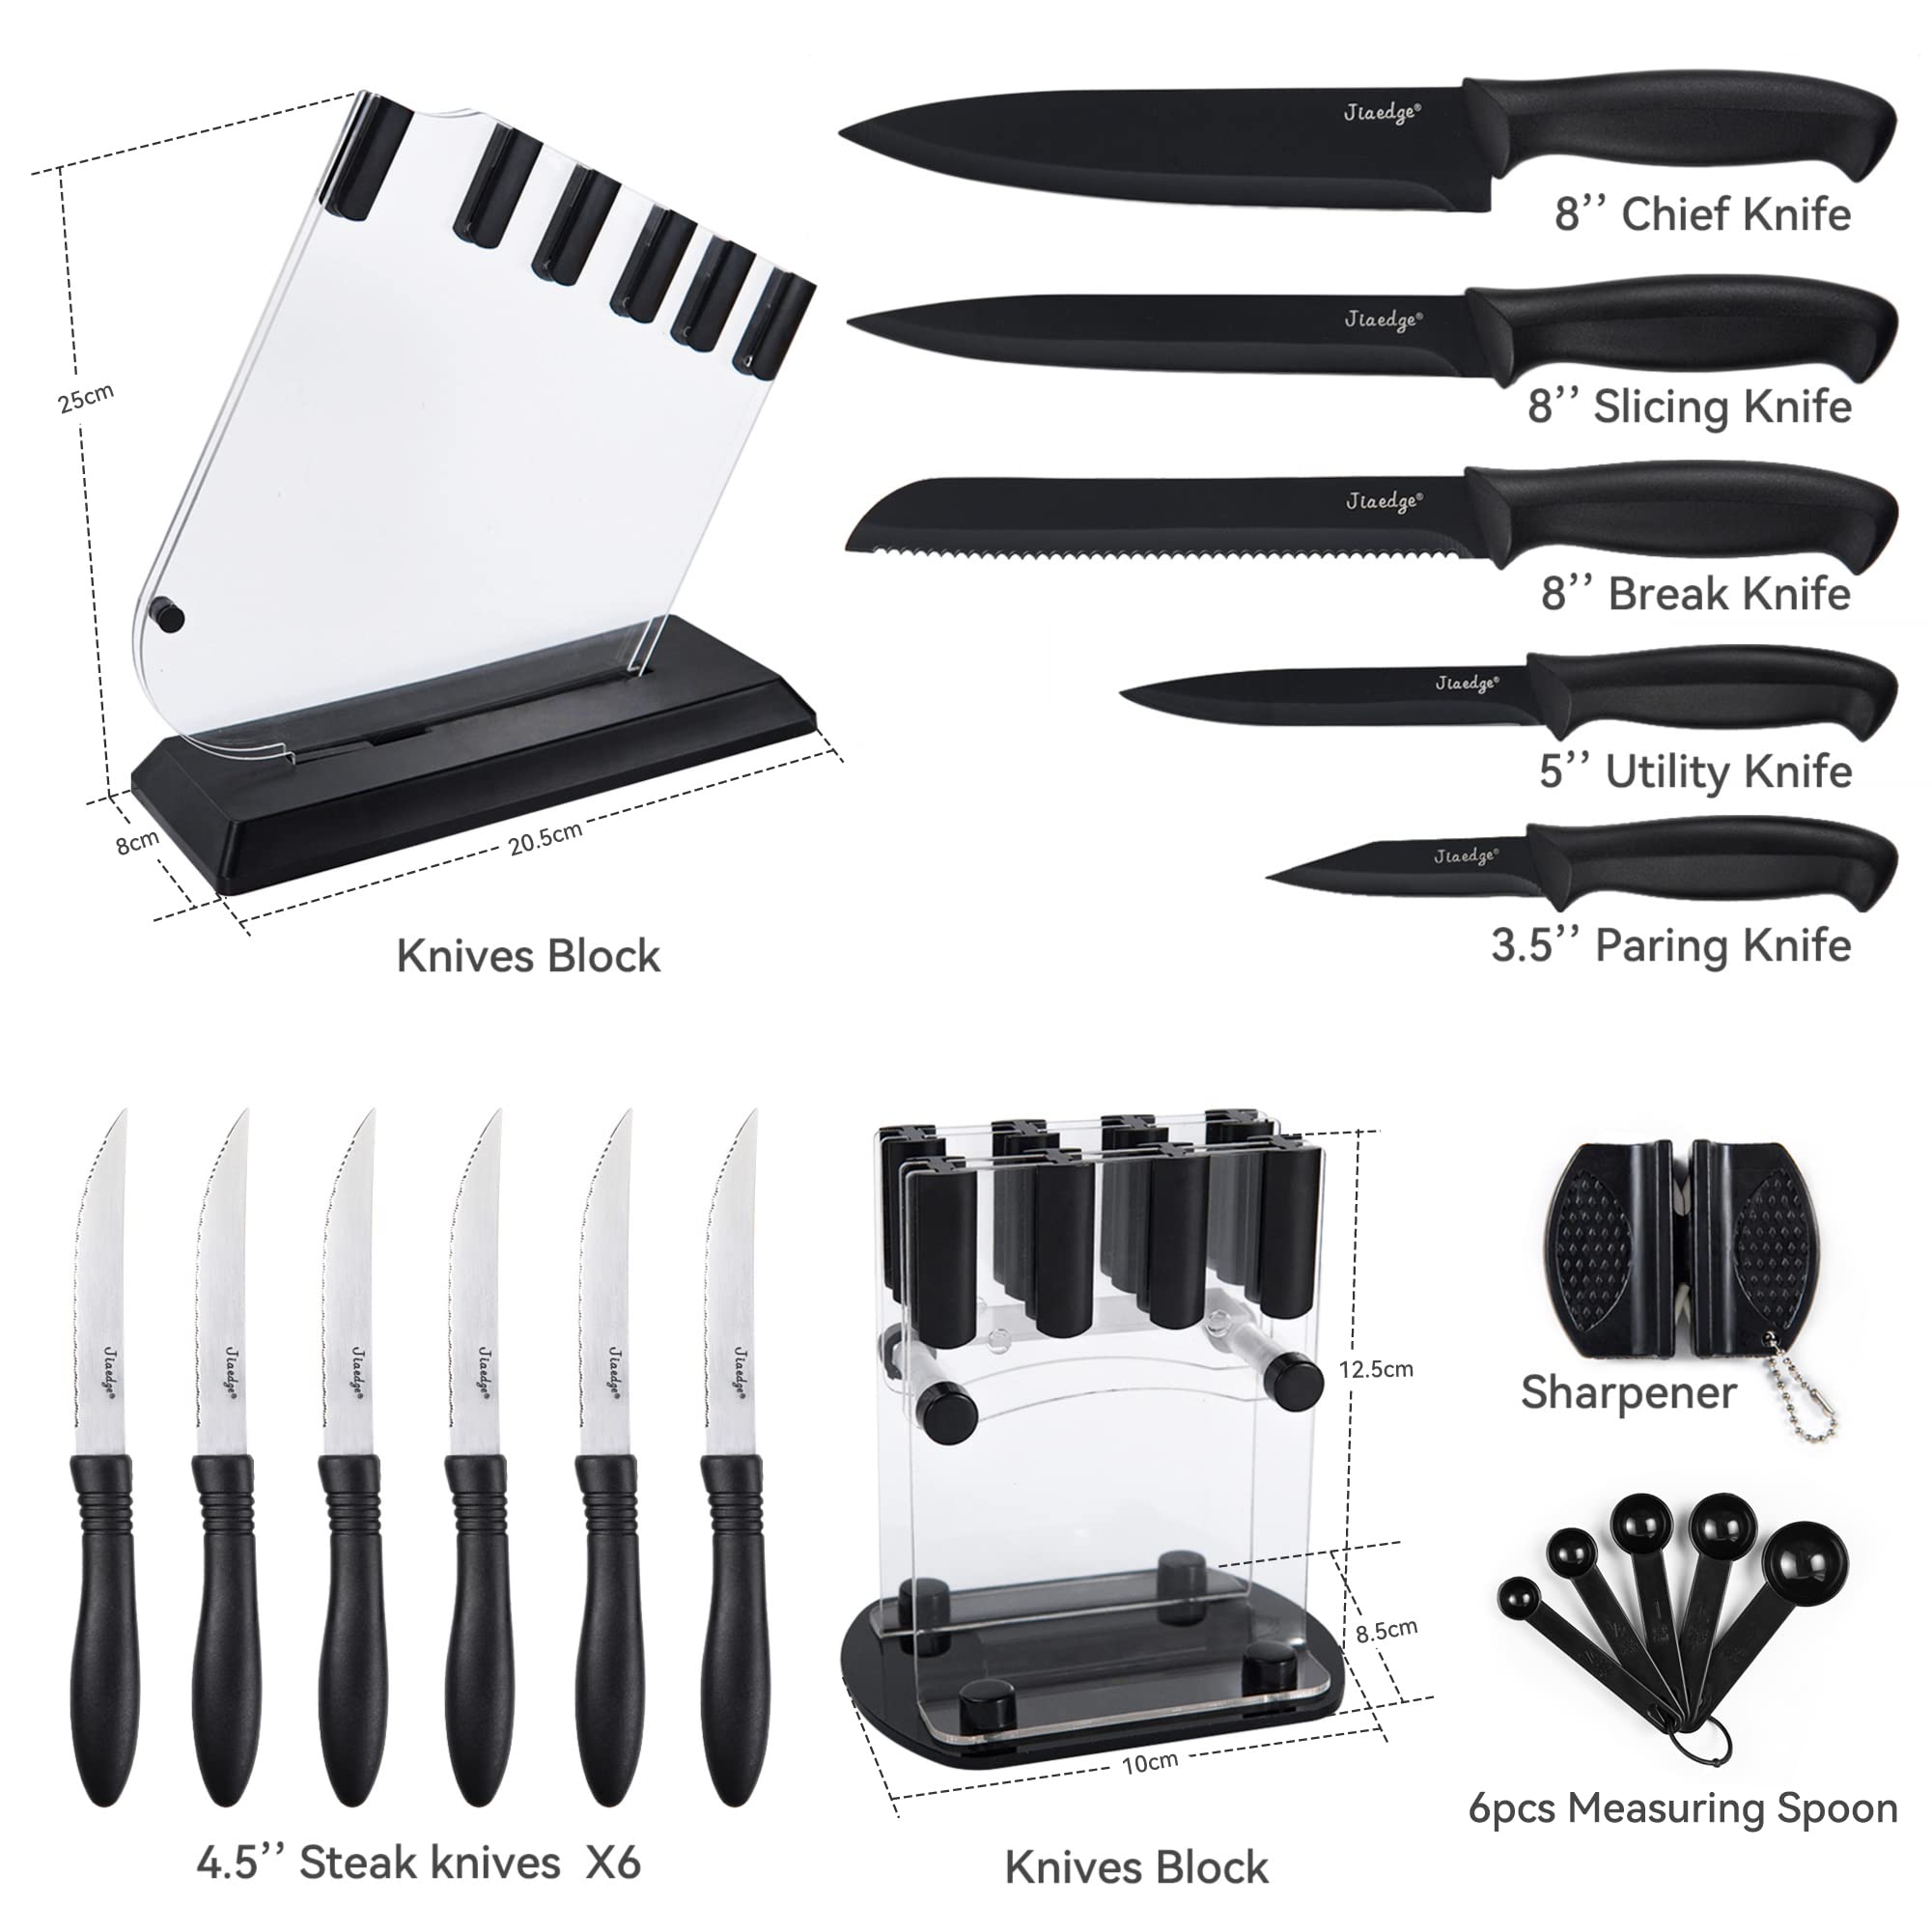 Knfie Set, Jiaedge 19 Pcs Kitchen Knife Set with Block, Dishwasher Safe Knife Block Set, 6 Serrated Steak Knives, Black